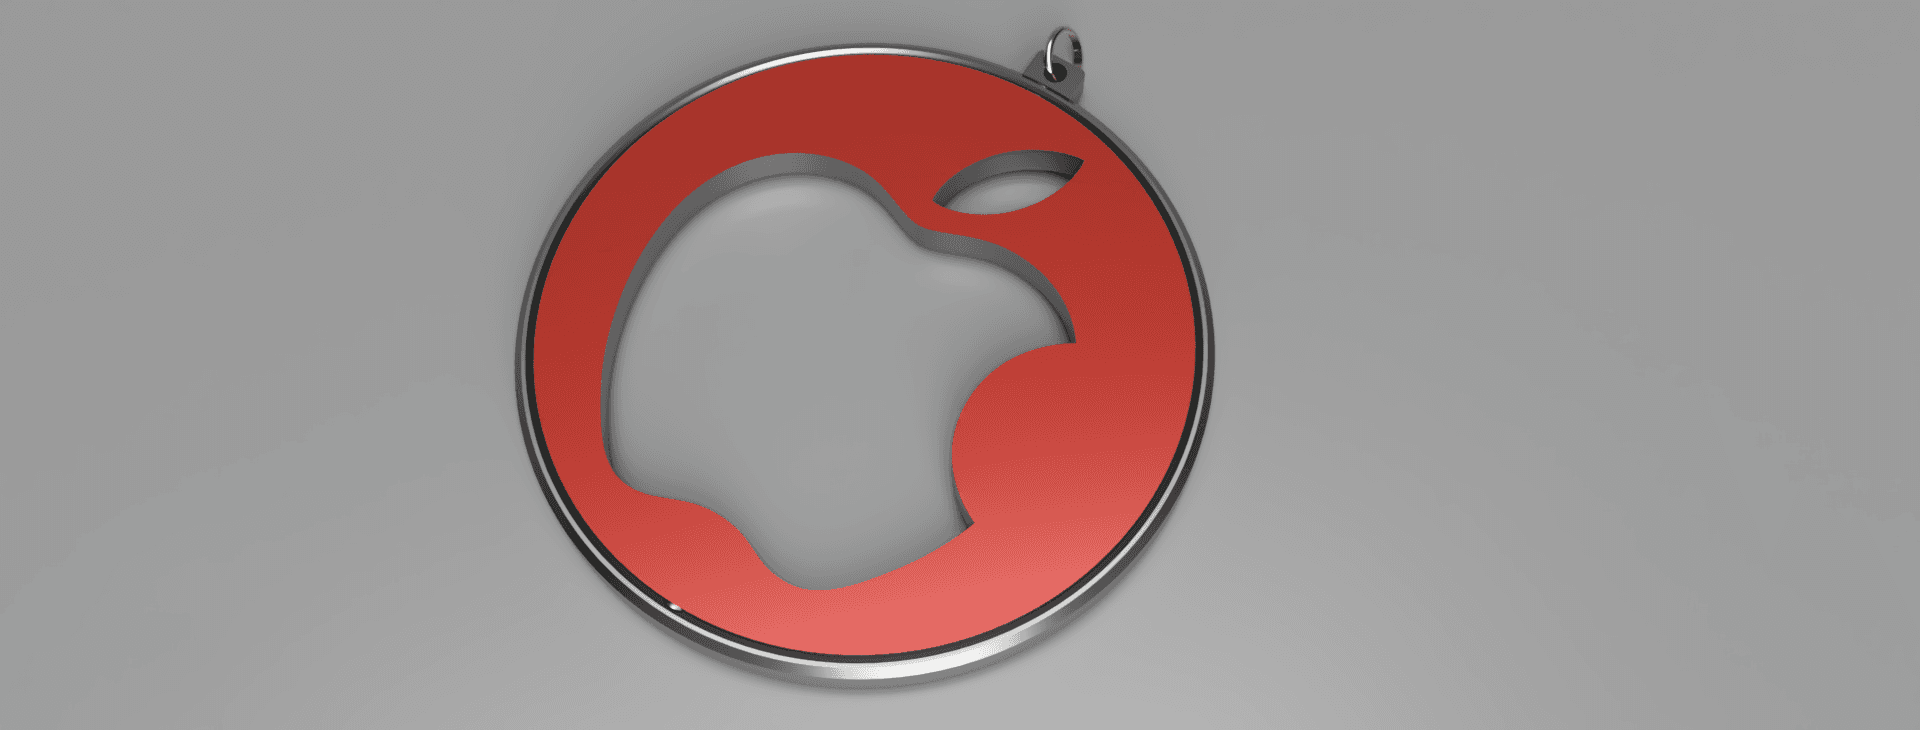 Apple key ring 3d model